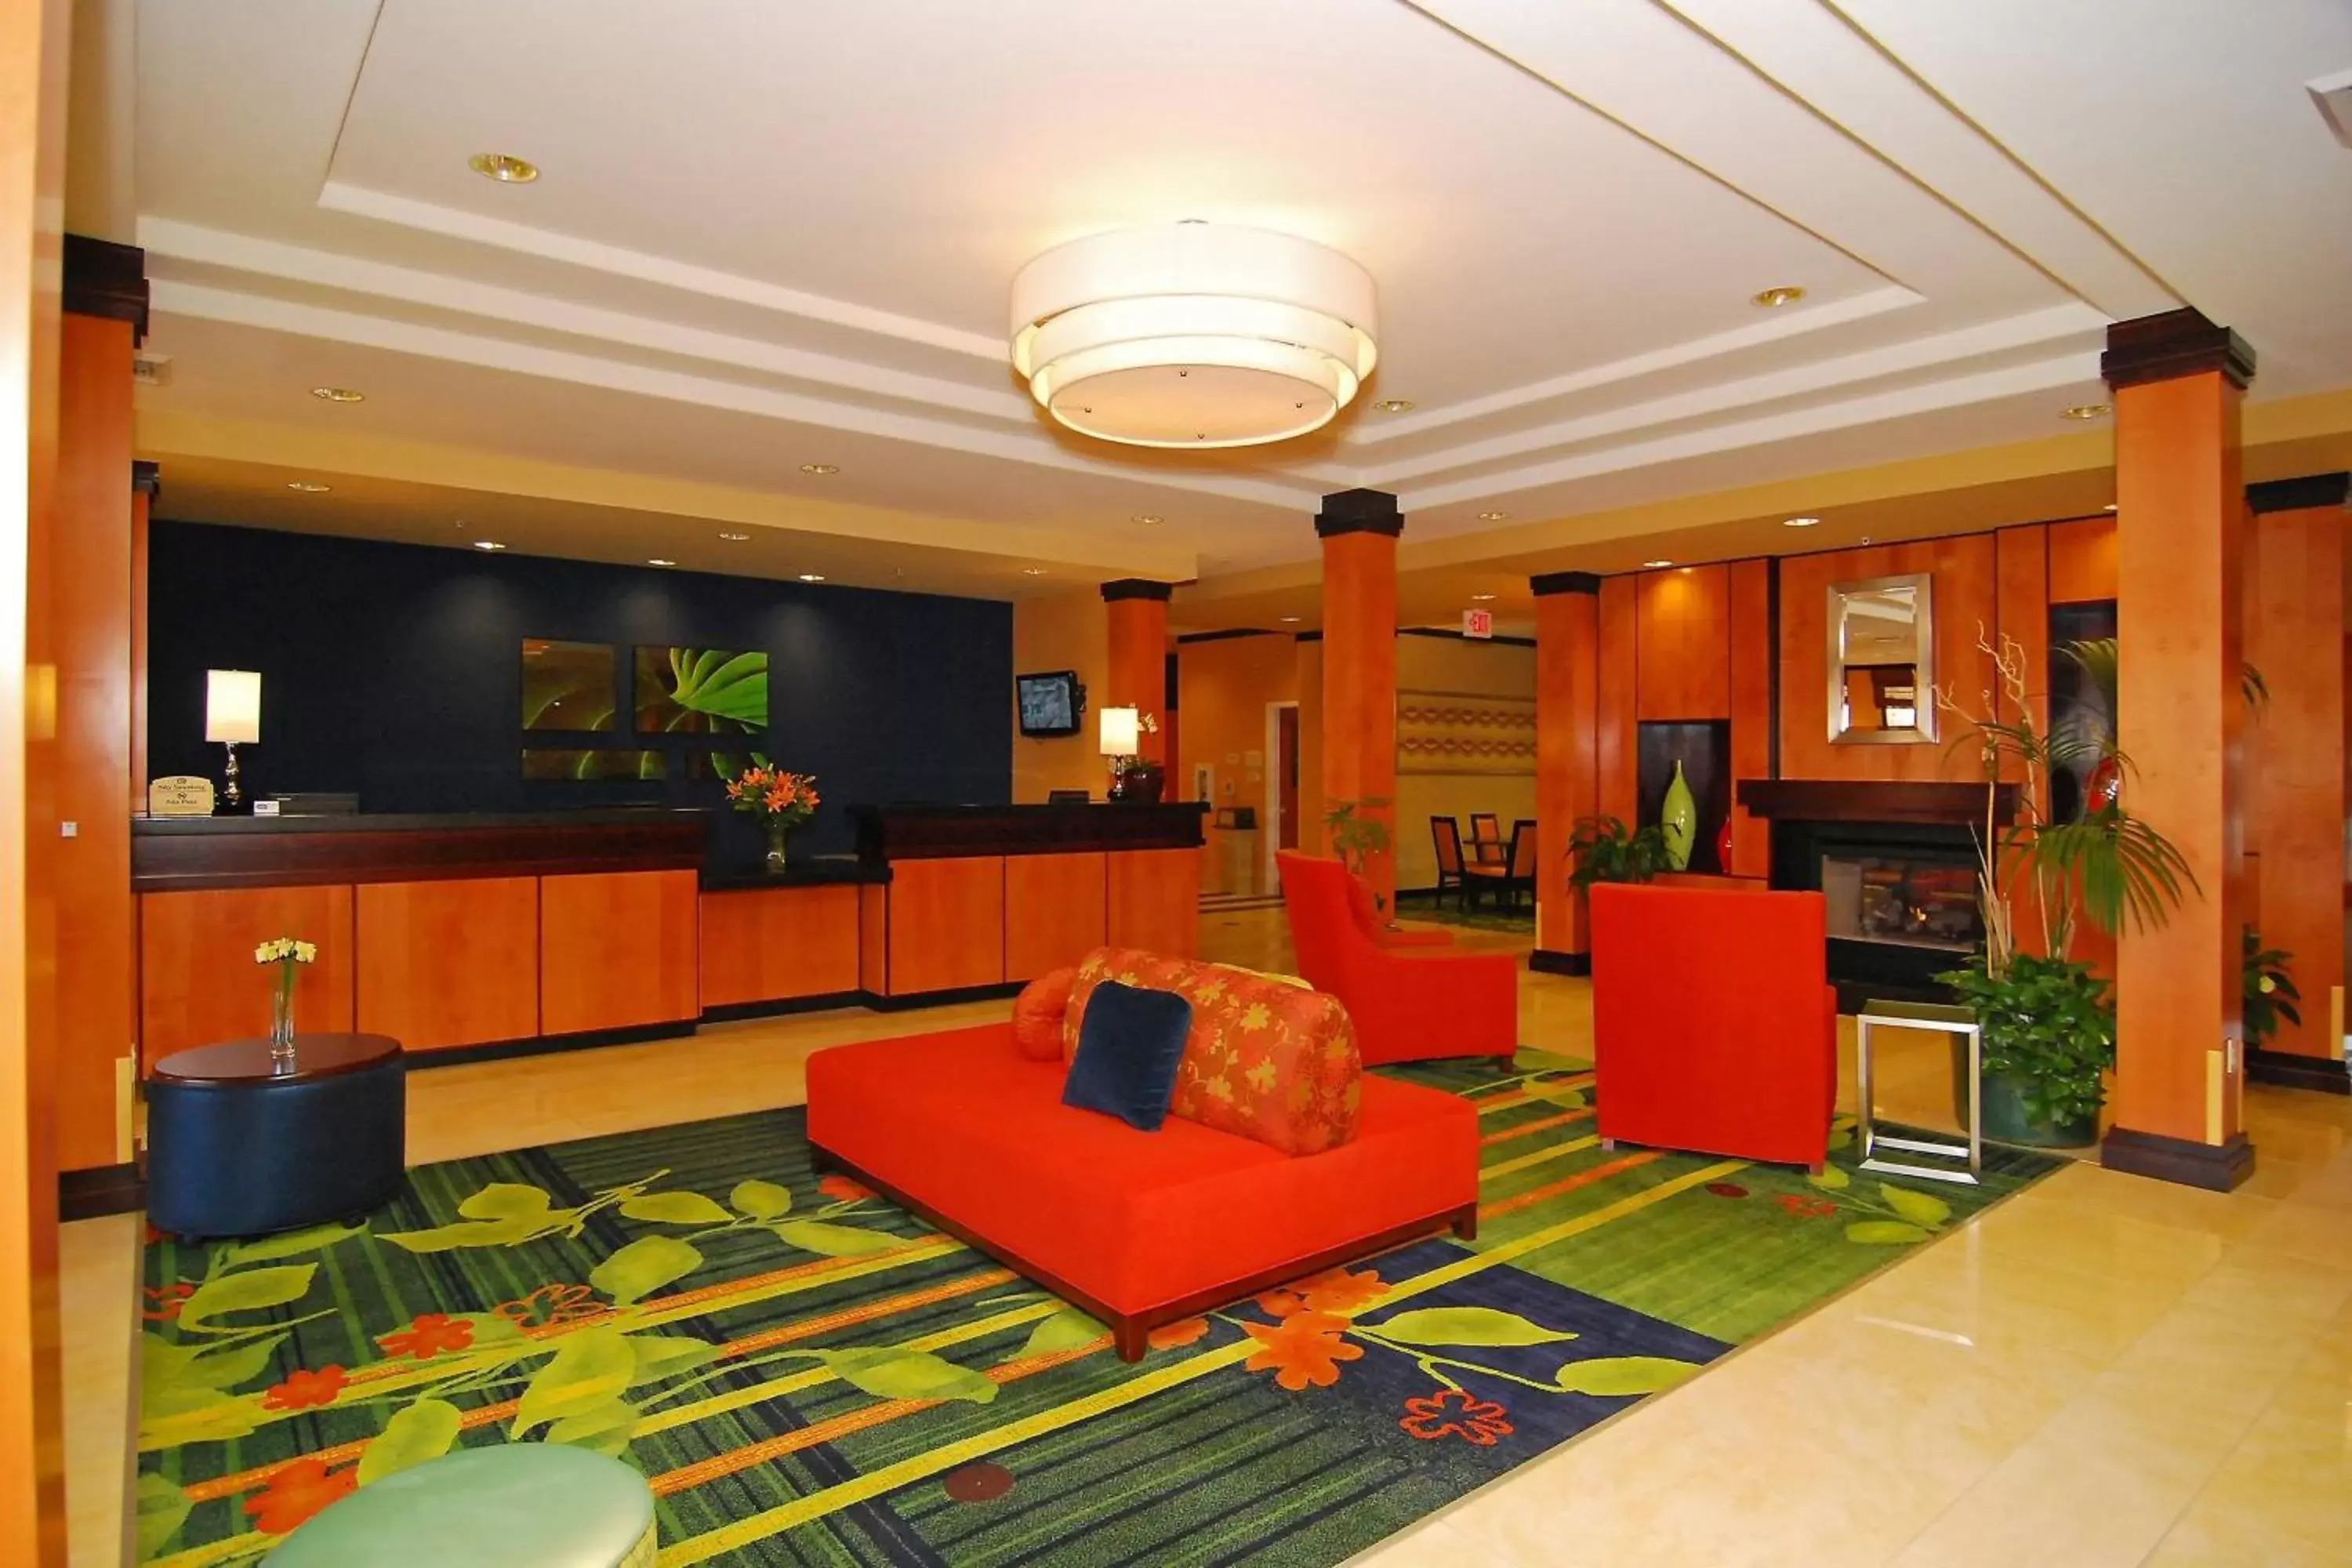 Lobby or reception, Lobby/Reception in Fairfield Inn & Suites Tehachapi